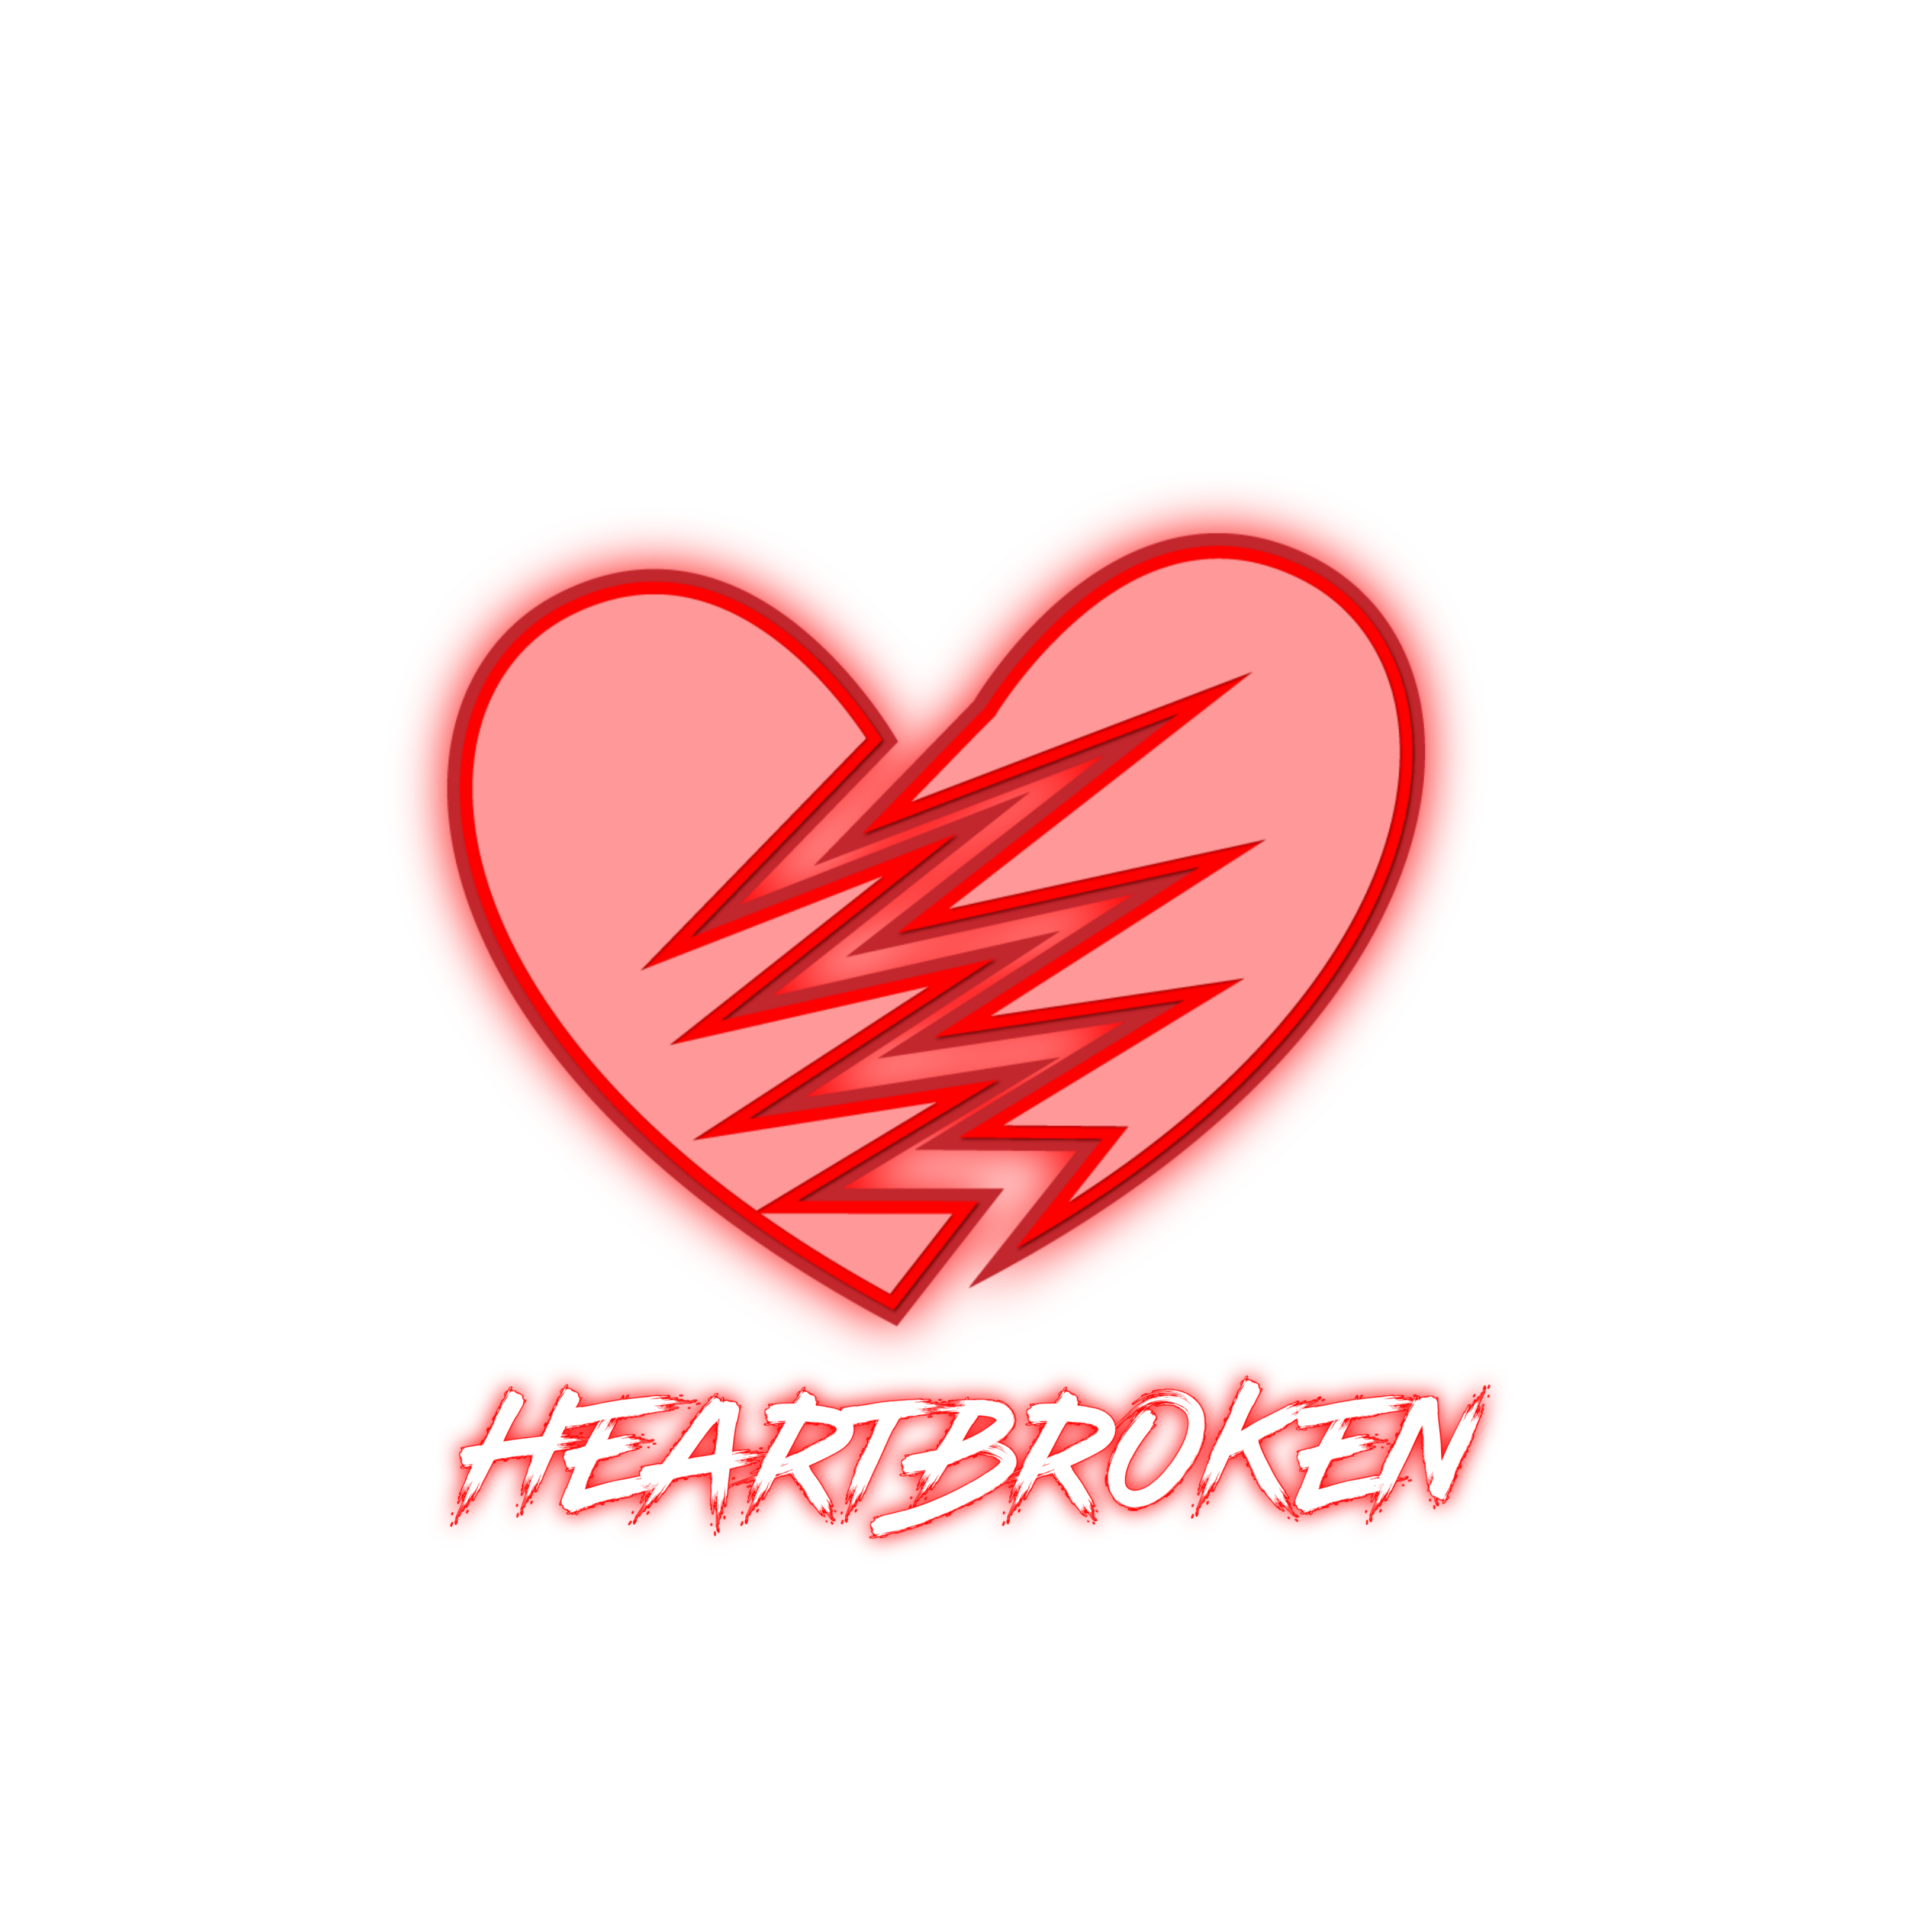 Heart Broken PNG Image HD 